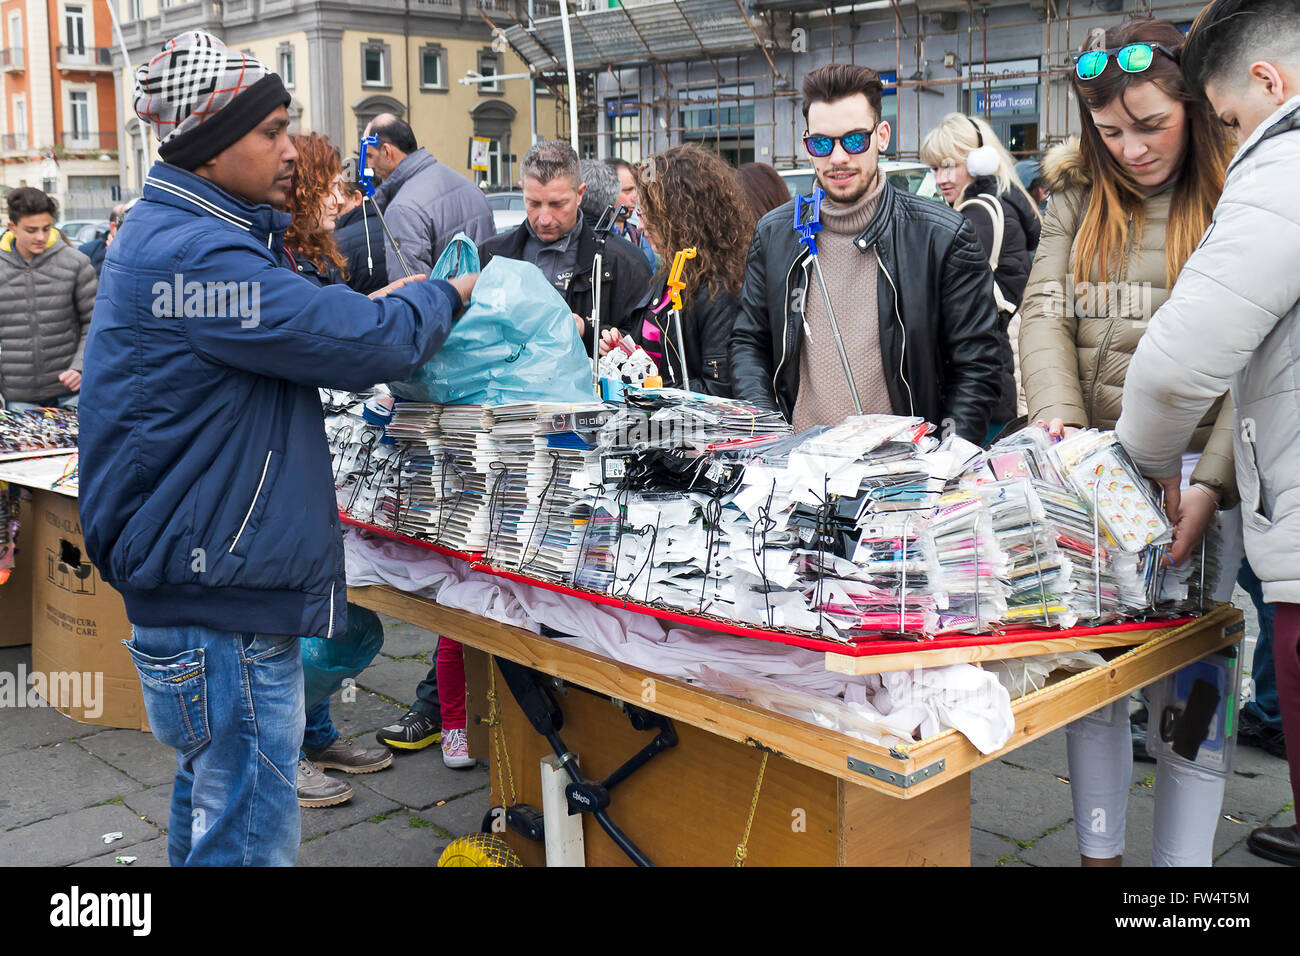 Neapel, Italien - 28. März 2016: Am Wasser, einem Straßenhändler und seine Karre an Zubehör für Smartphones, zeigt die Ware Stockfoto